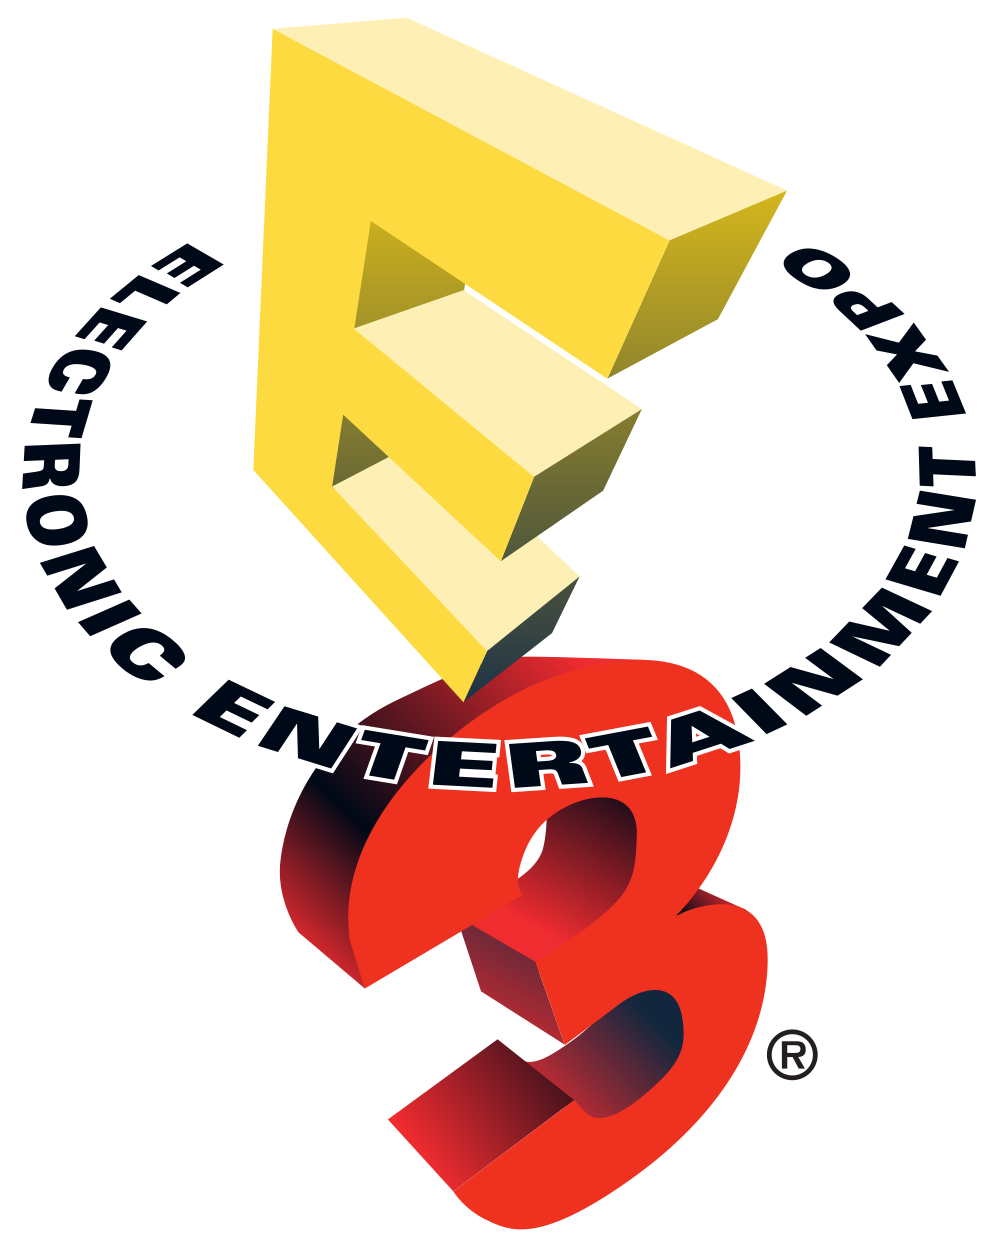 E3 2015 : Conférence Sony, notre sélection !